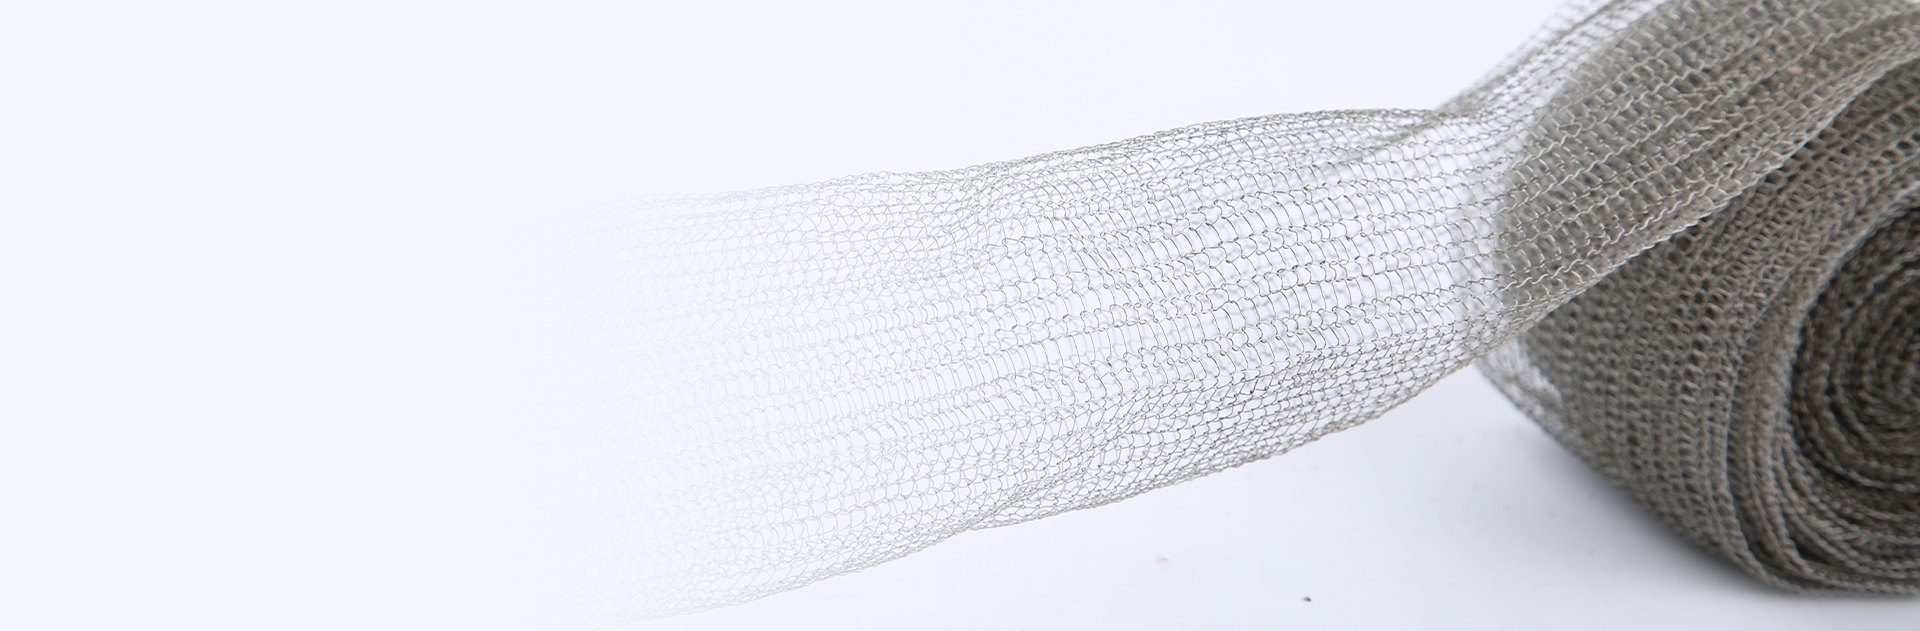 一捲單絲不銹鋼編織網,一部分伸出。